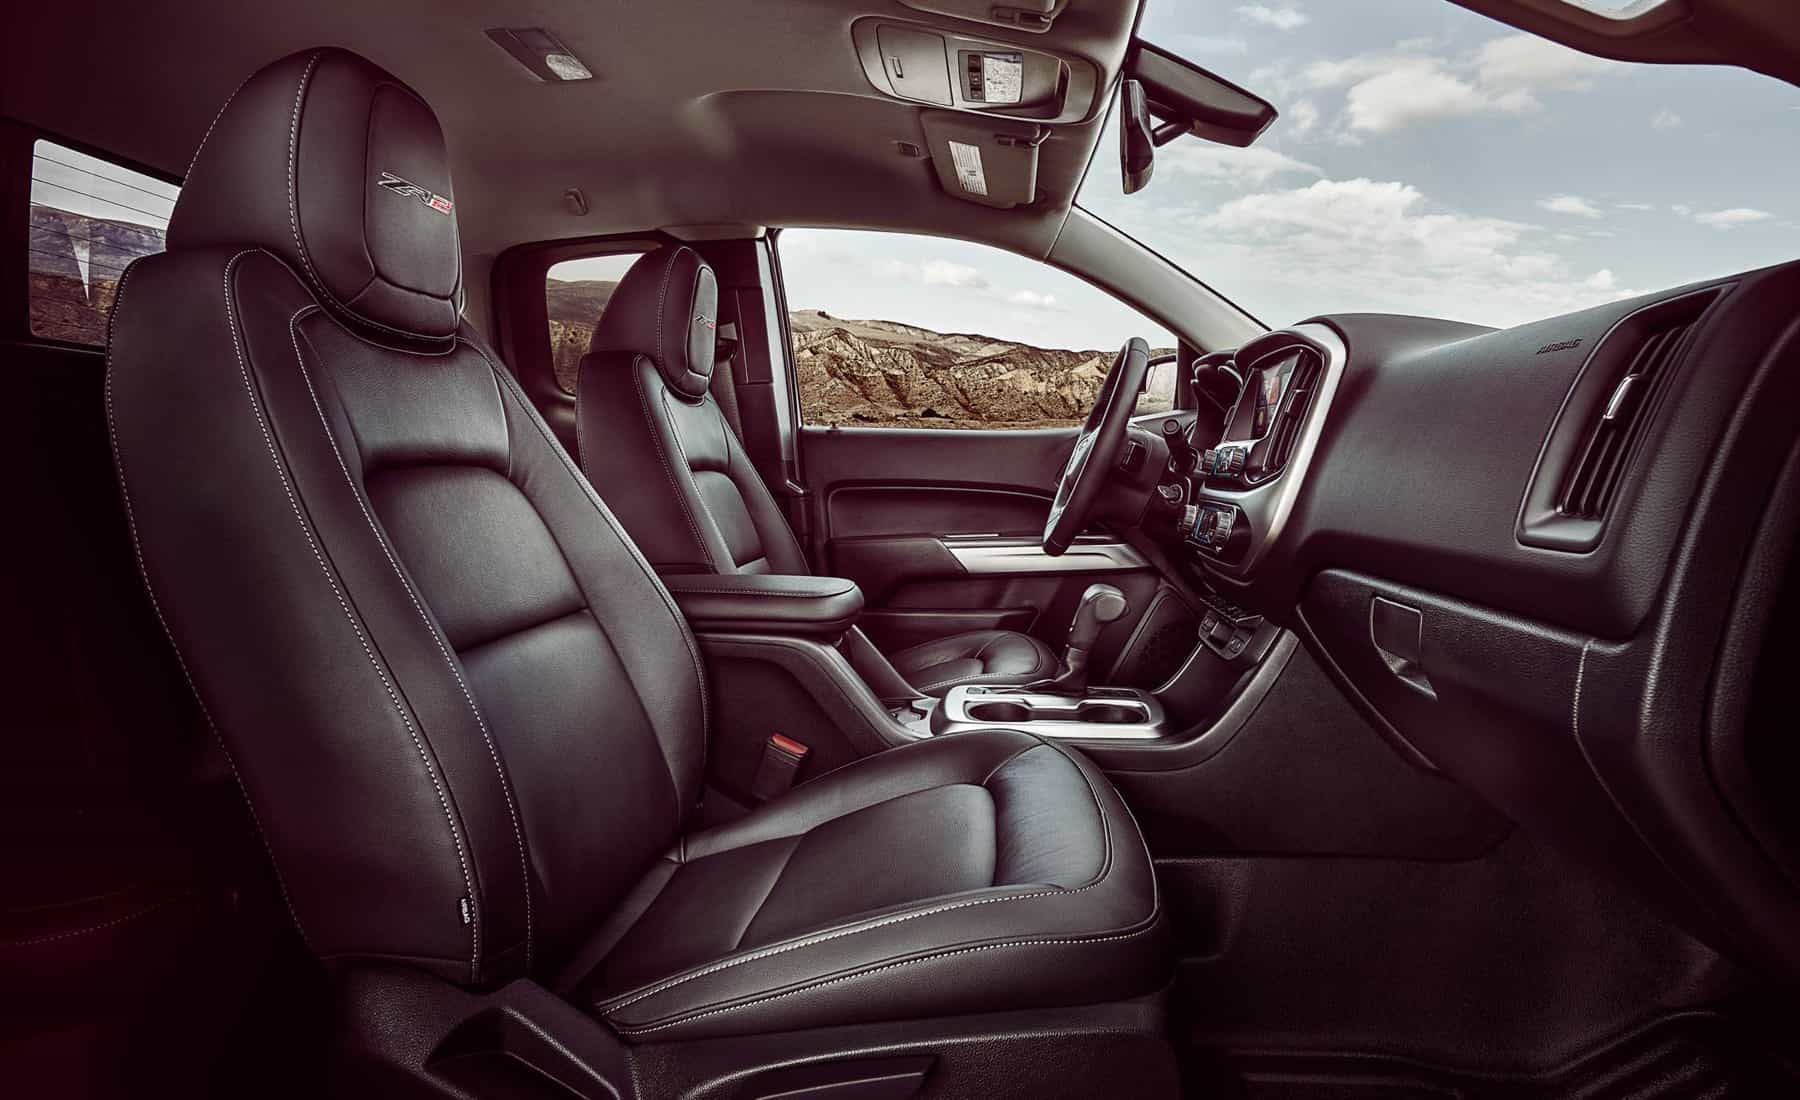 2017 Chevrolet Colorado Zr2 Crew Cab Diesel Interior Seats Front (View 7 of 16)